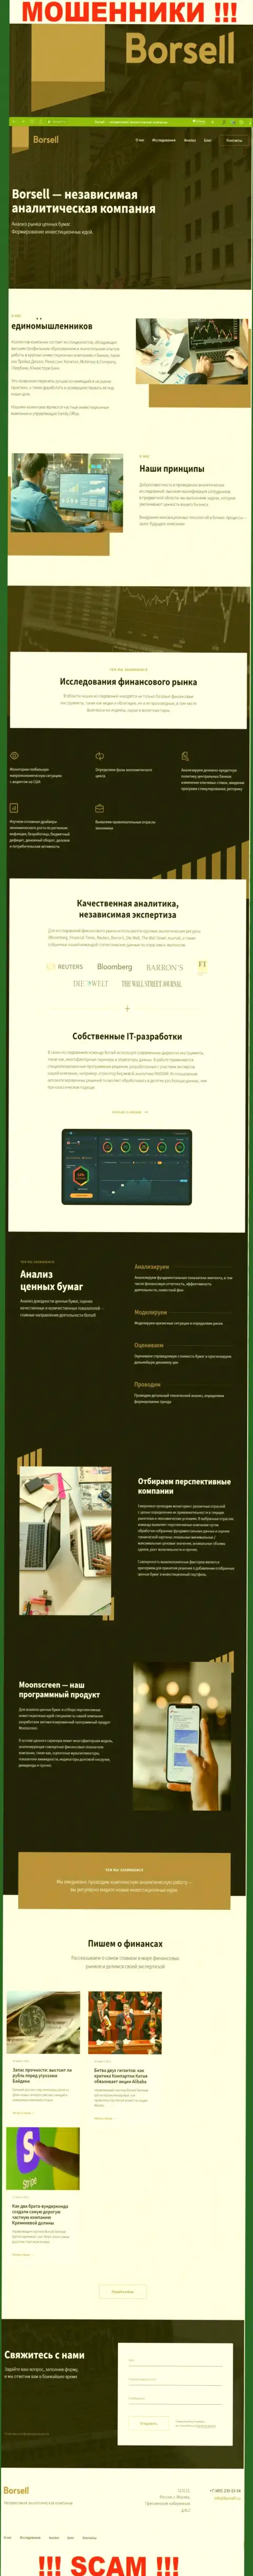 Главная страничка официального интернет-сервиса мошенников Borsell Ru